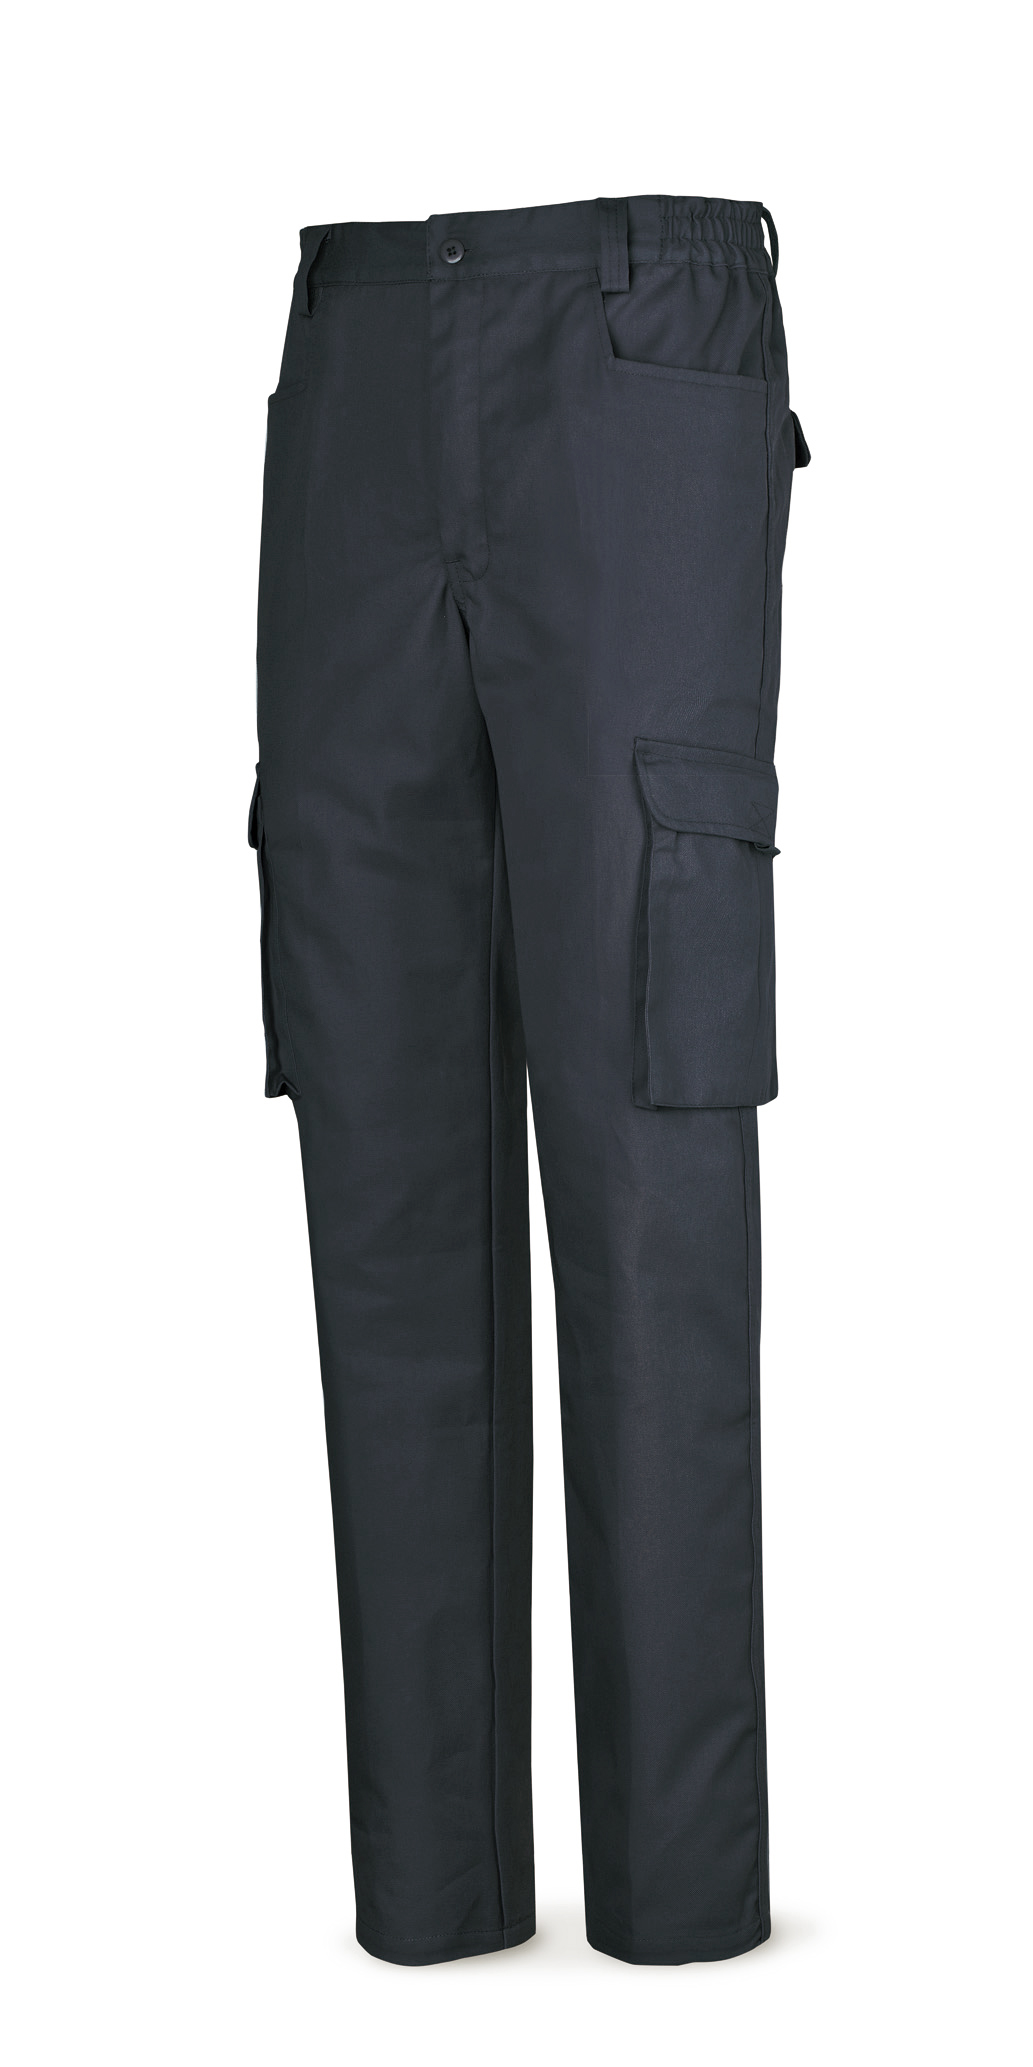 488-PA Top Vestuario Laboral Serie Top Pantalón azul marino algodón de 245 g. Multibolsillo